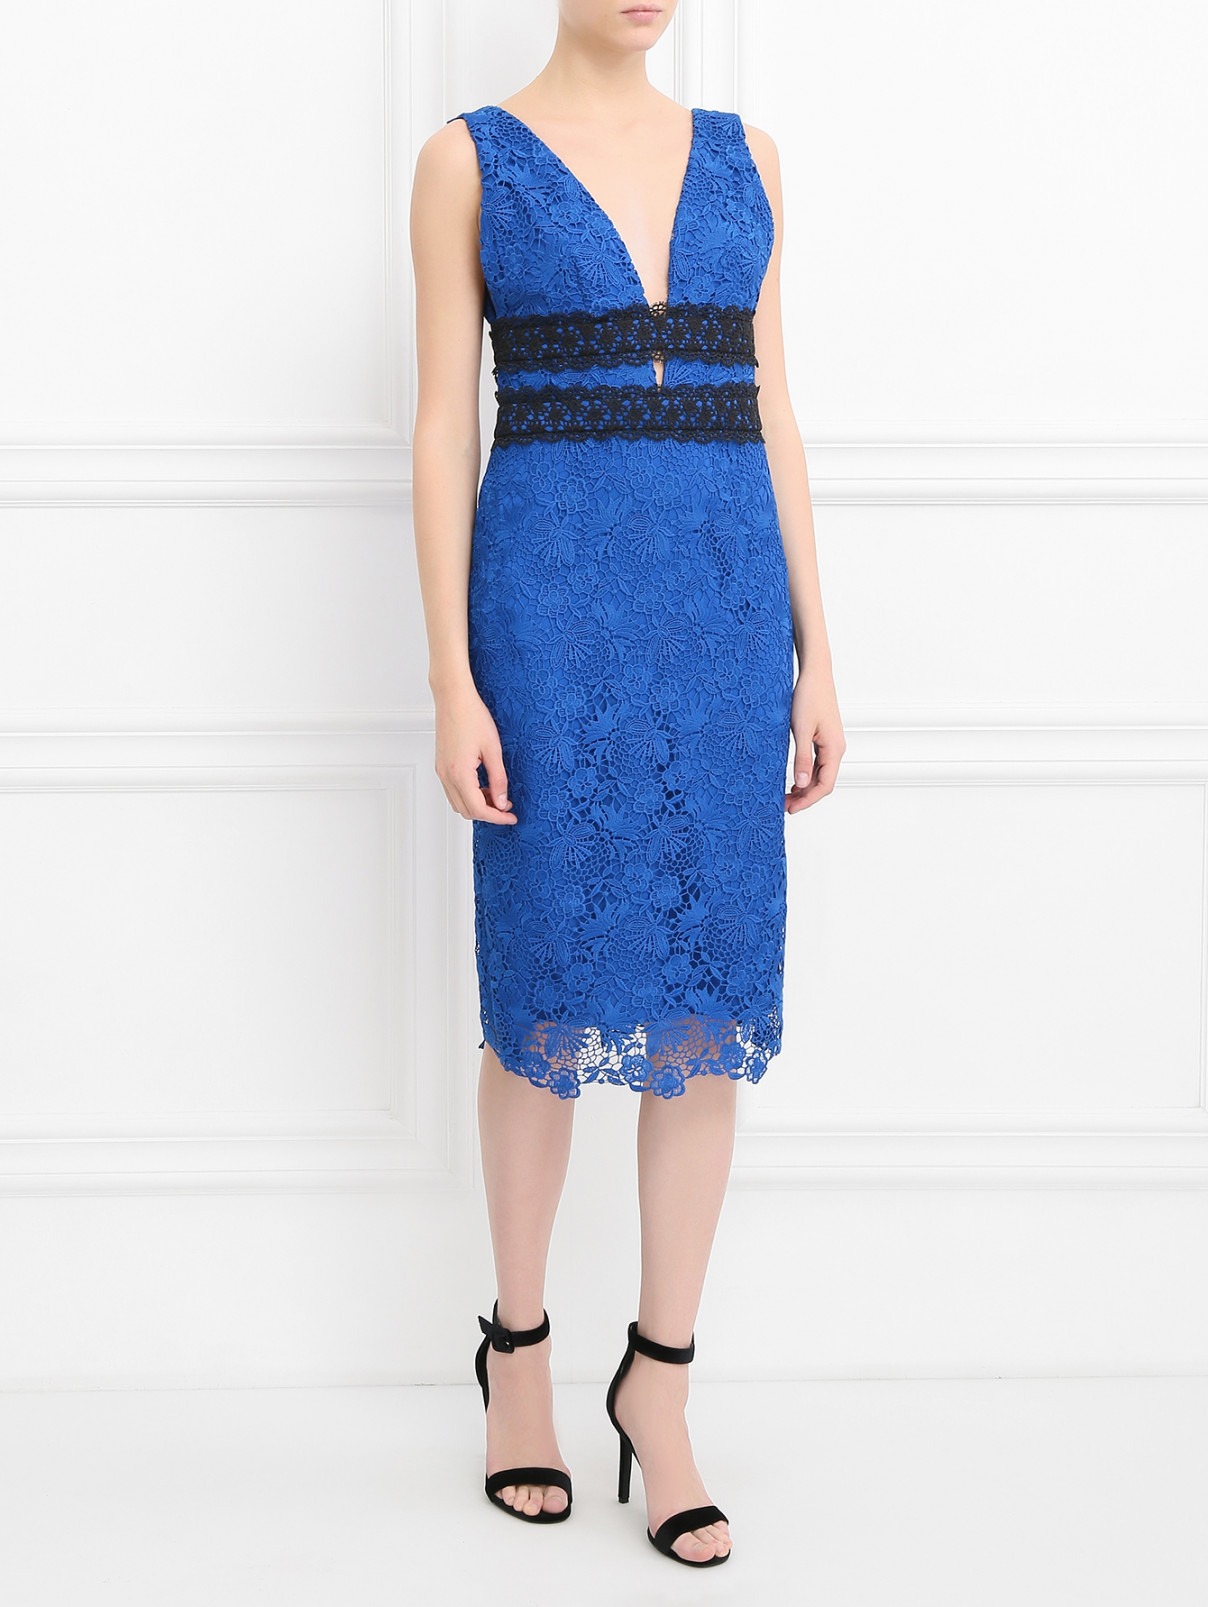 Платье-футляр с кружевным узором Diane von Furstenberg  –  Модель Общий вид  – Цвет:  Синий